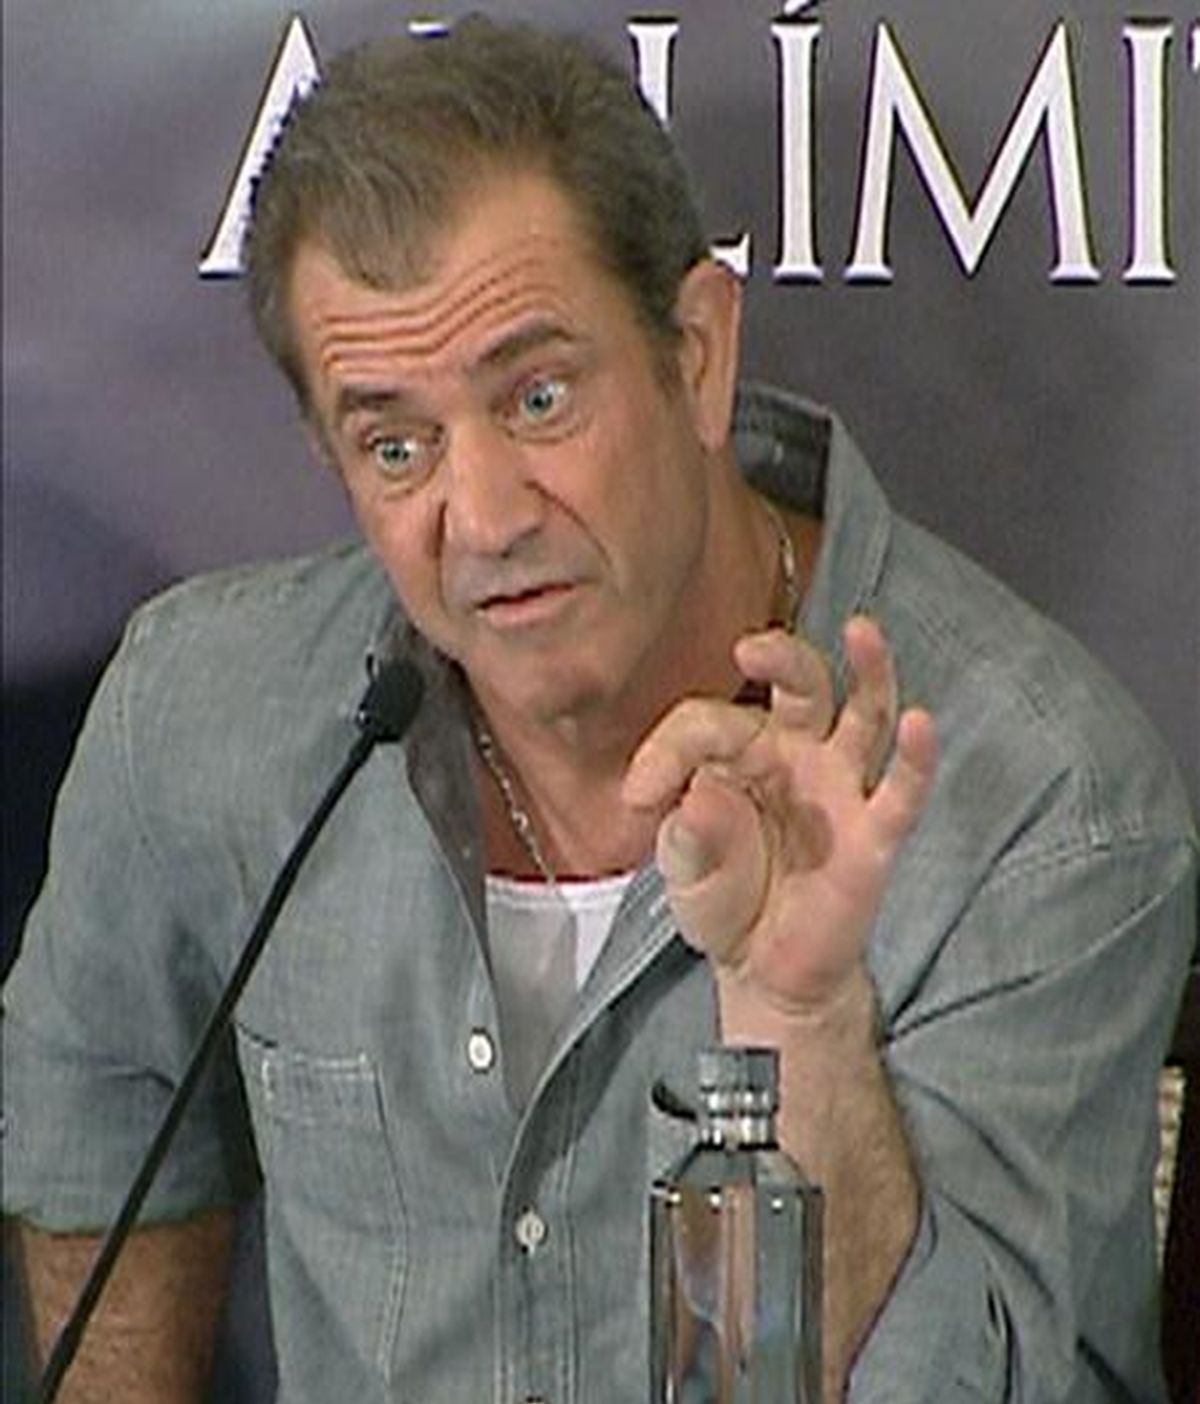 El actor estadounidense Mel Gibson se entrevistó con los agentes el pasado domingo bajo la condición de que no se hablara de los presuntos malos tratos de los que le acusó su ex pareja rusa. EFE/Archivo